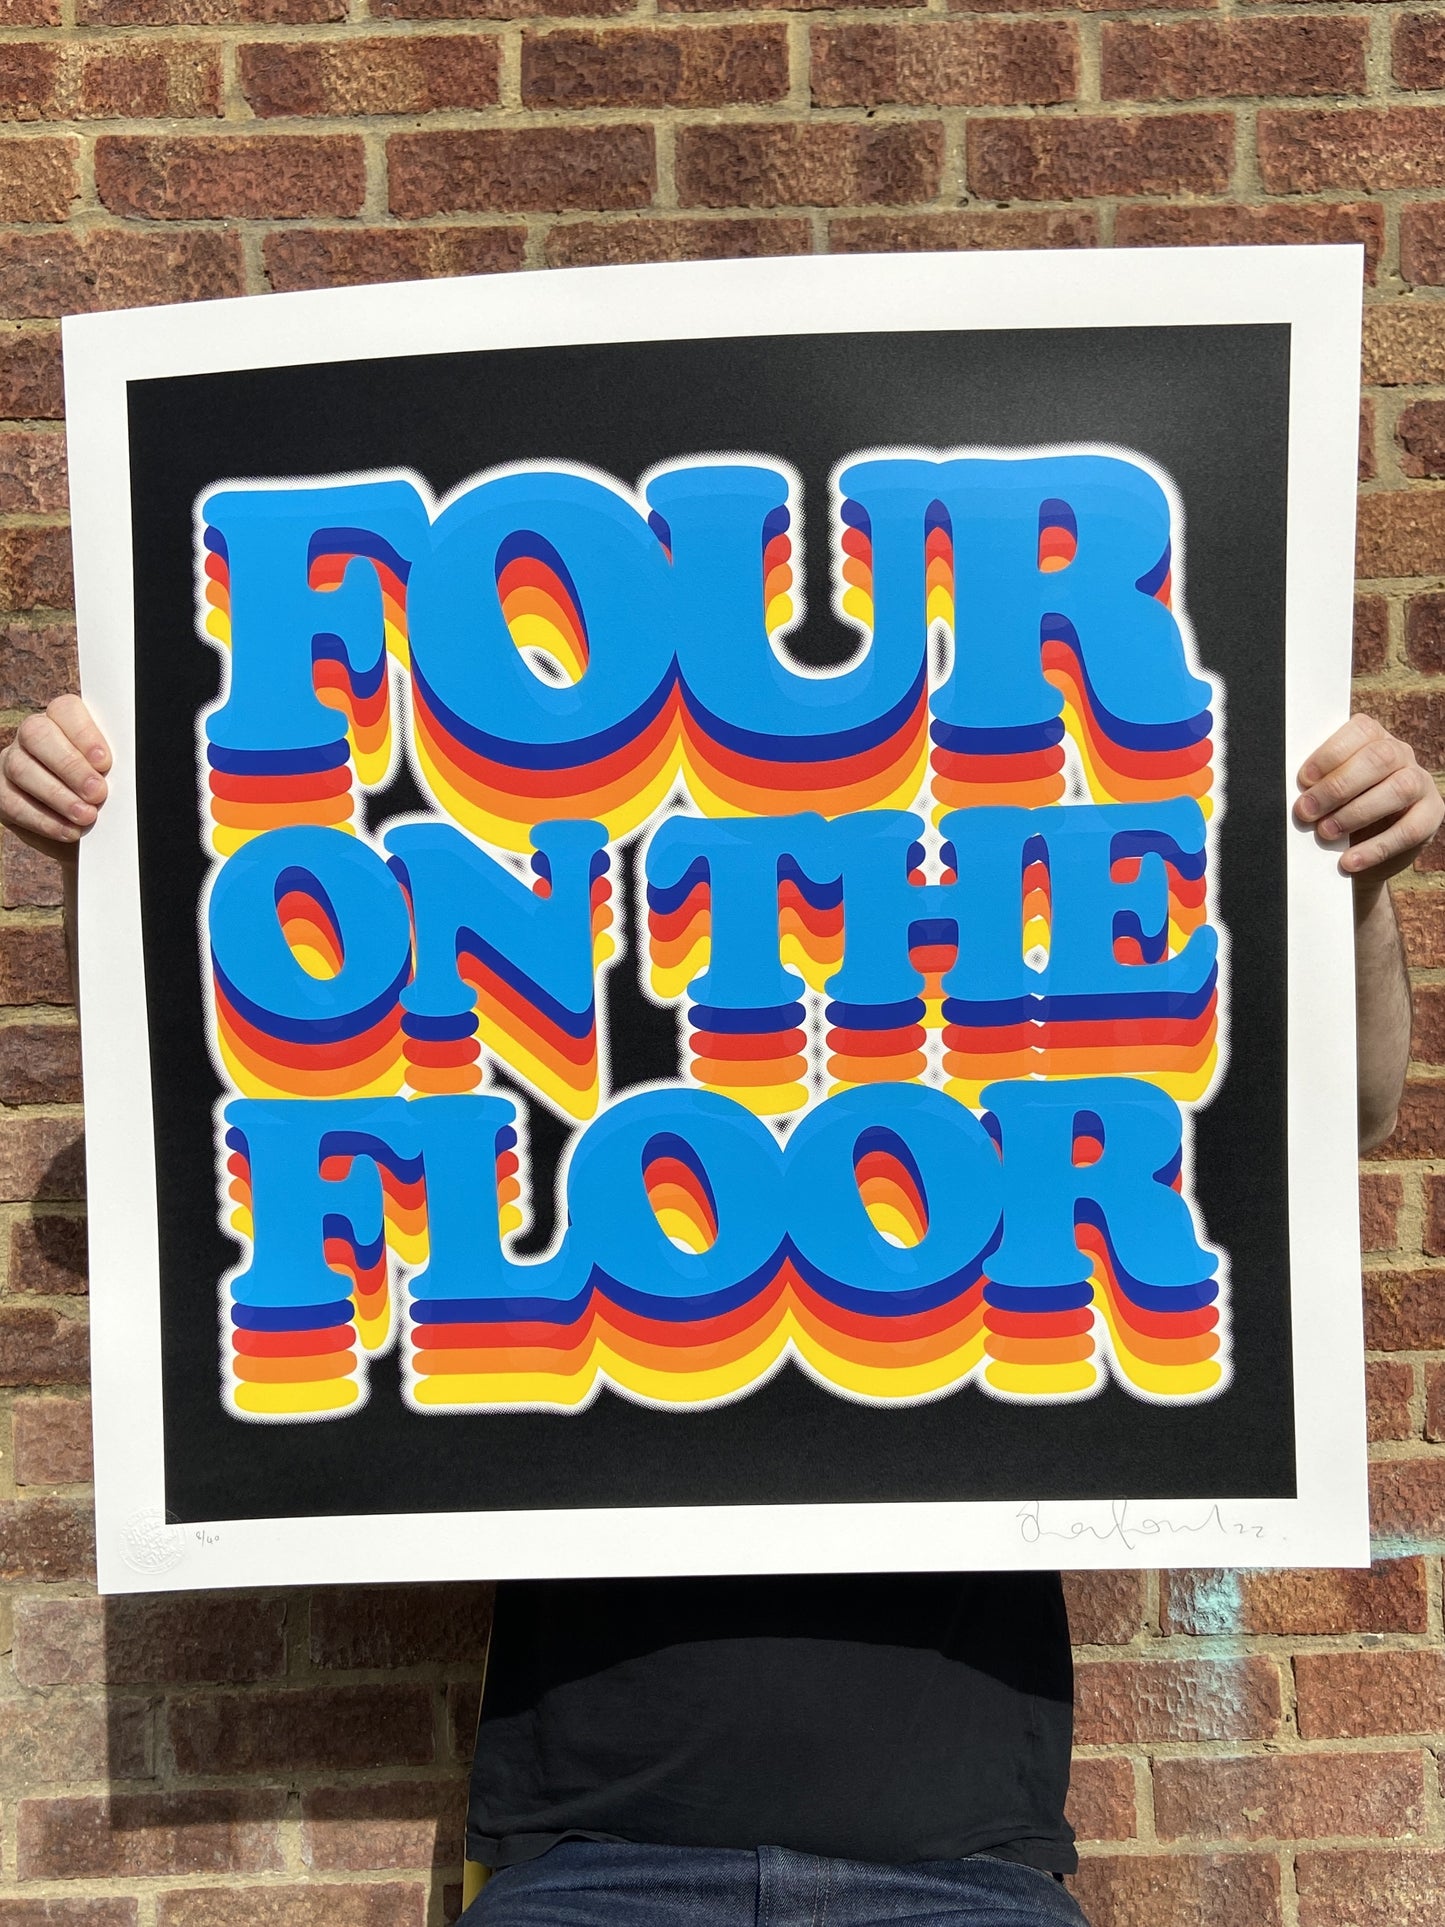 Four on the floor